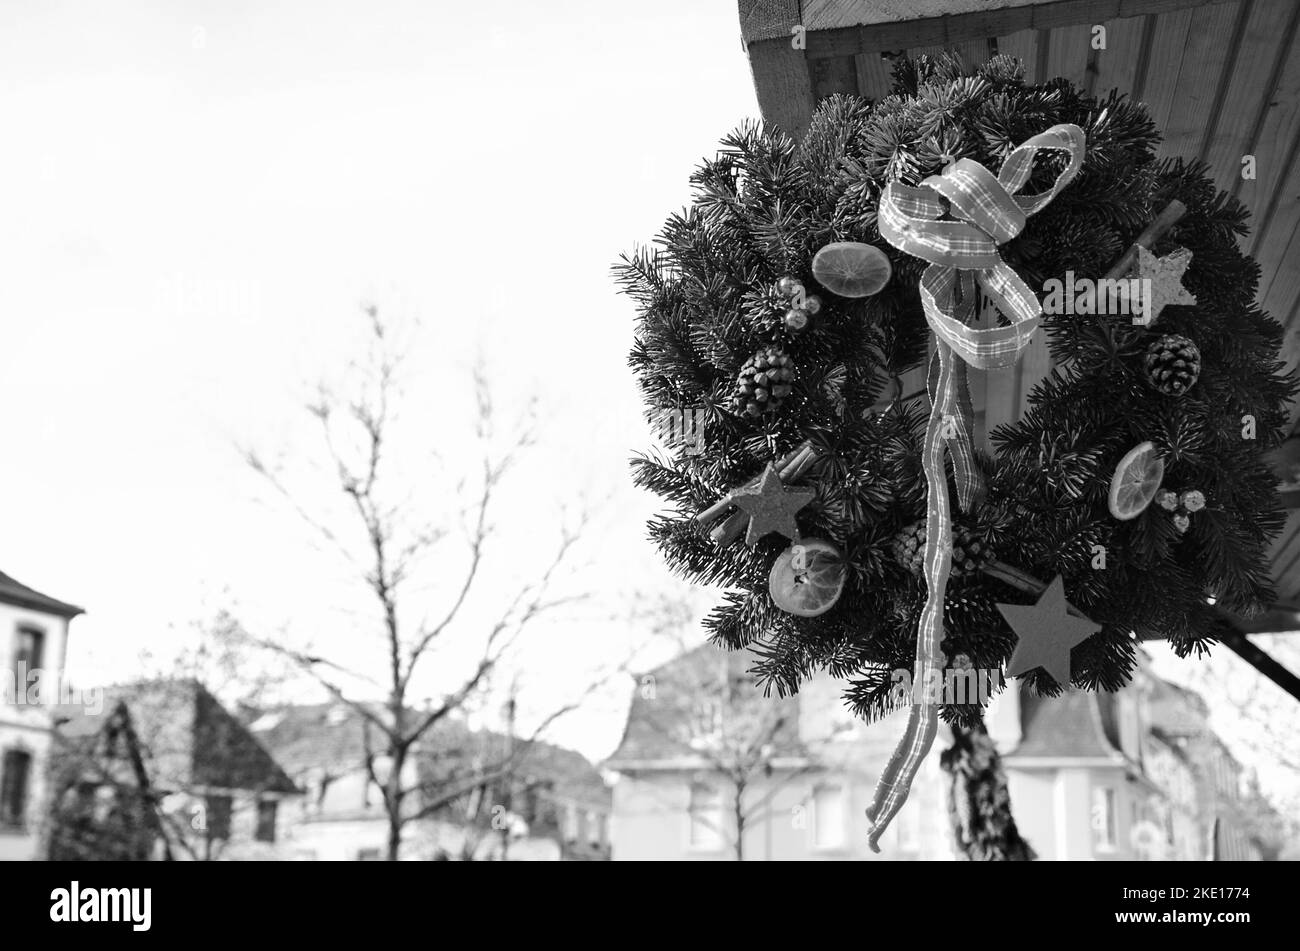 Adventskranz hängt vom Dach des Stalls auf dem Weihnachtsmarkt in Selestat, Frankreich. Selestat ist als Heimat des Weihnachtsbaums bekannt. Schwarzweißfoto Stockfoto